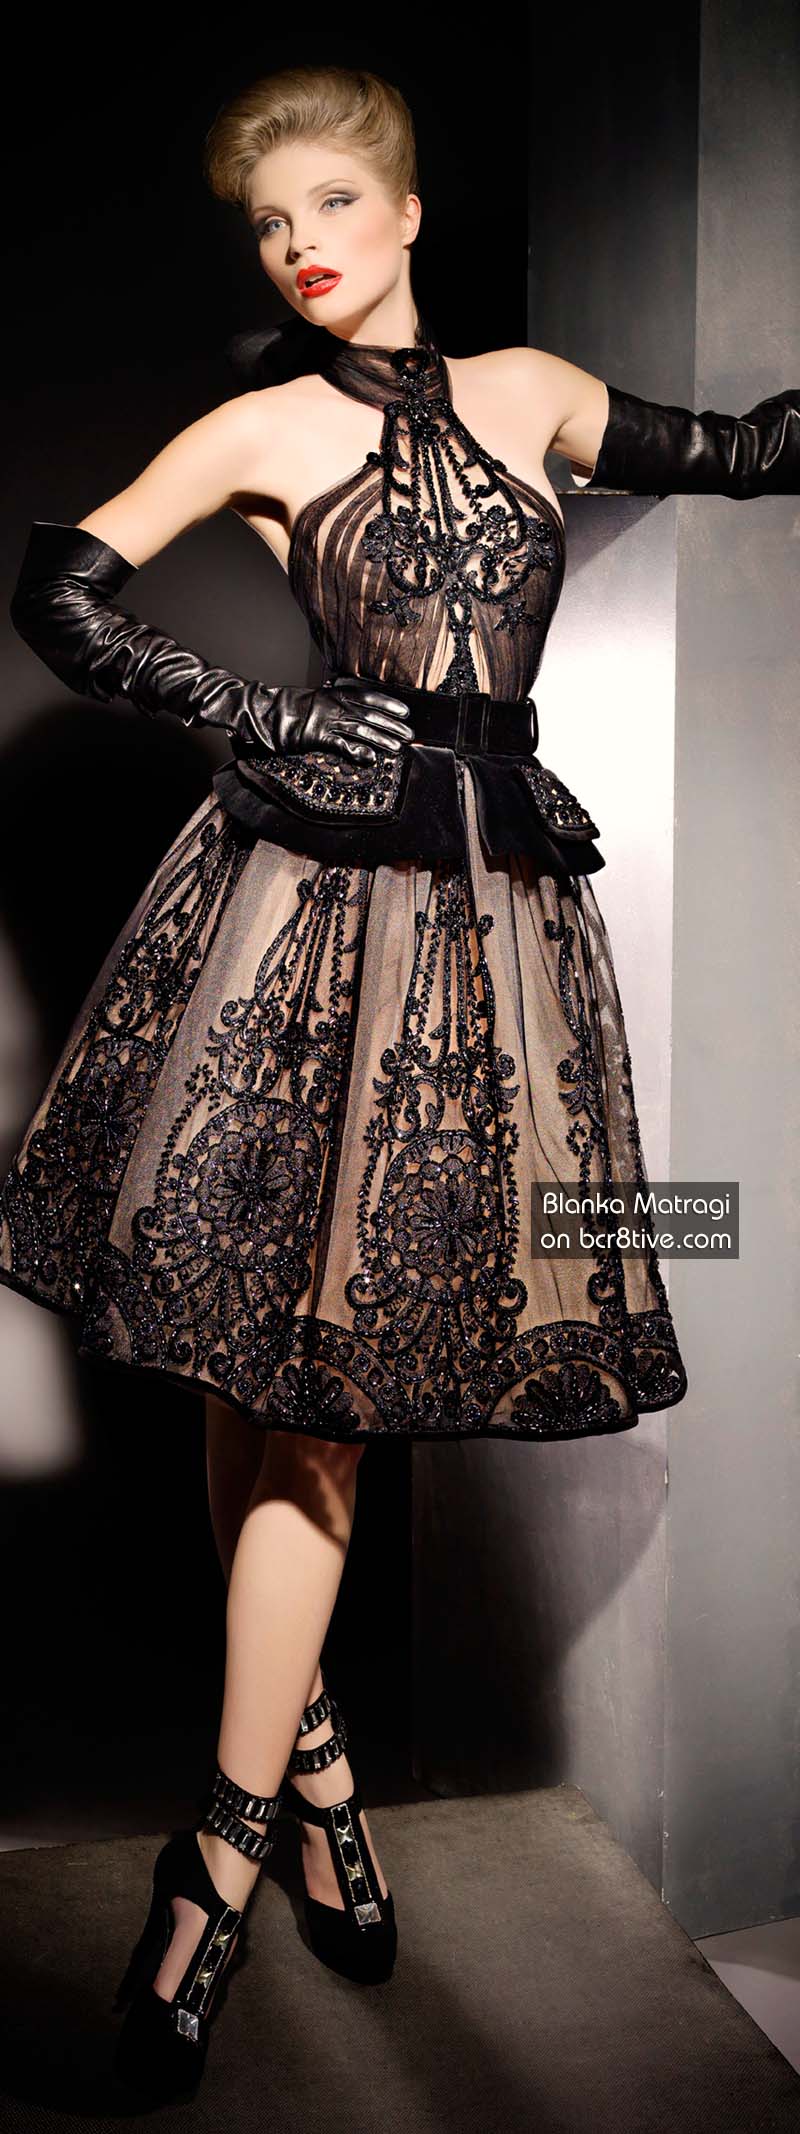 Универсальный Таланты Artisan Бланка Матраги »Бланка Матраги 30-летие коллекции Couture 